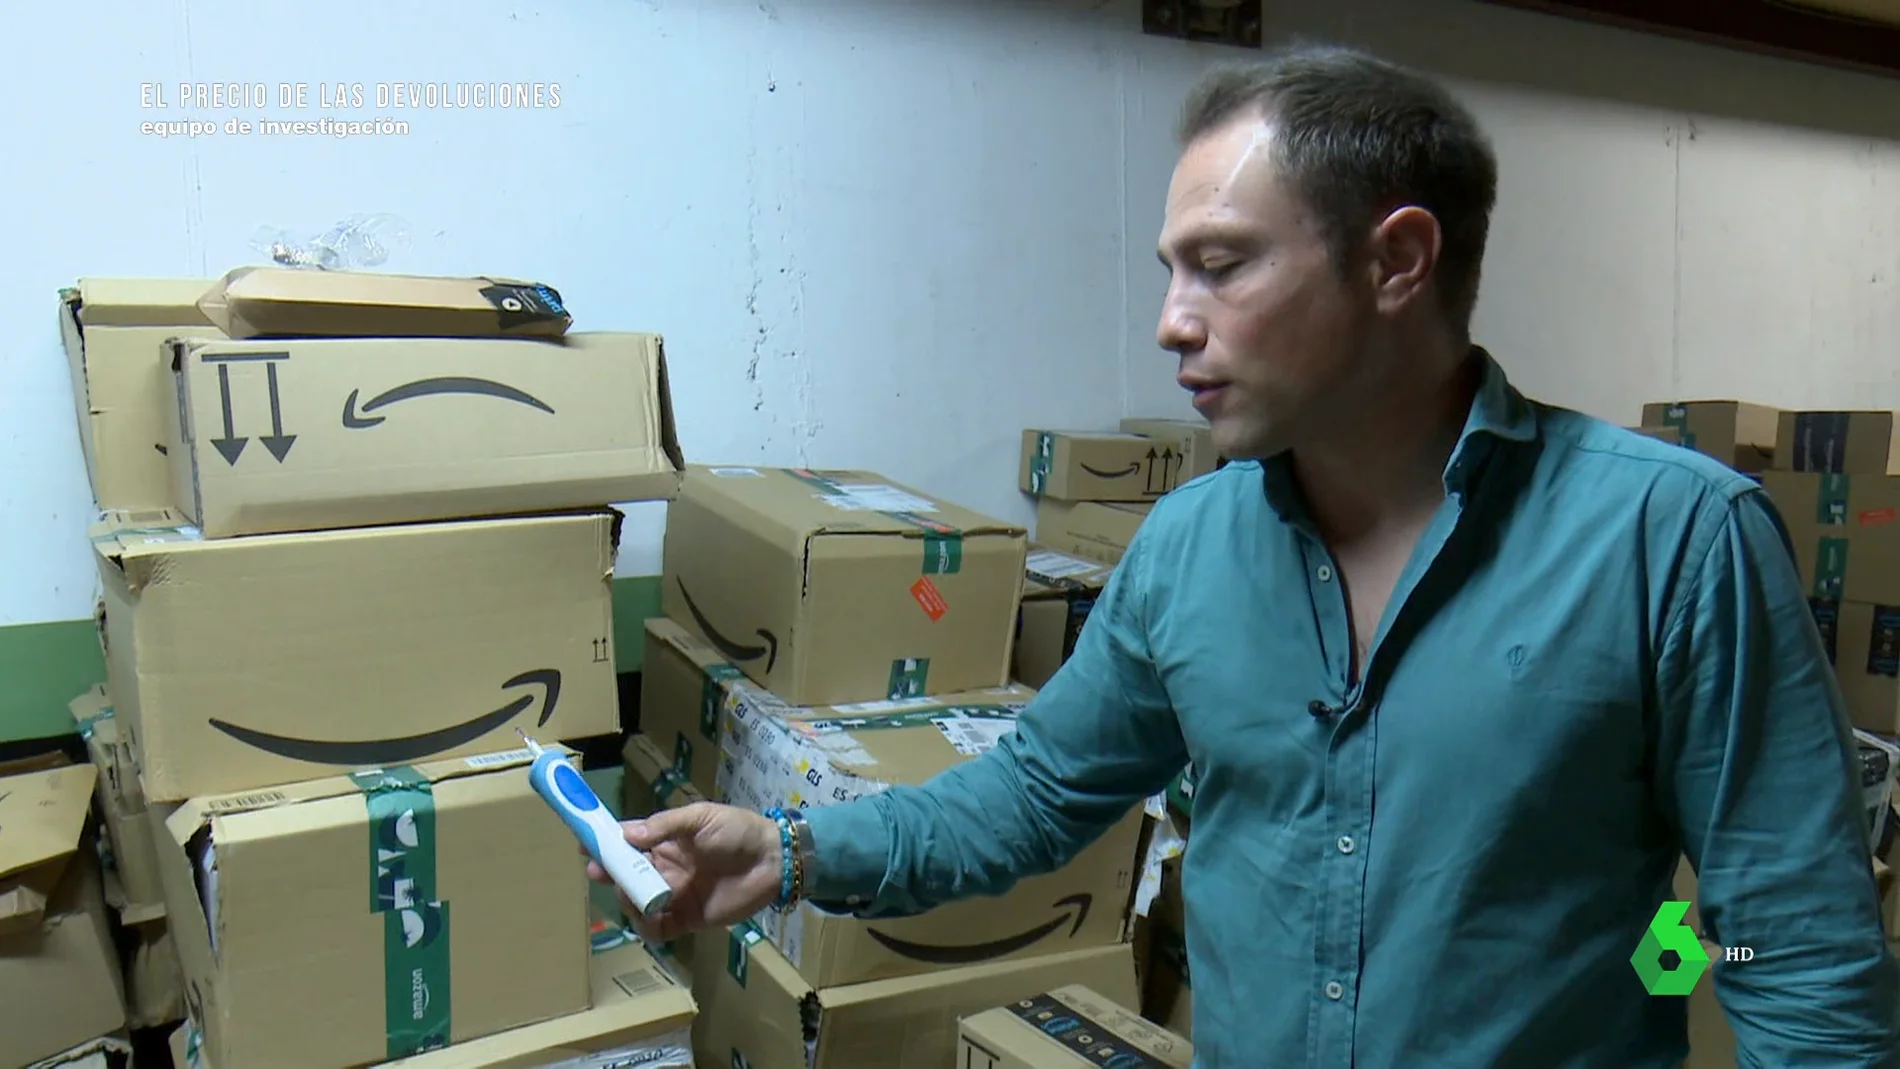 Habla un empresario que mantiene una batalla legal contra Amazon por las devoluciones: "He perdido un millón de euros"